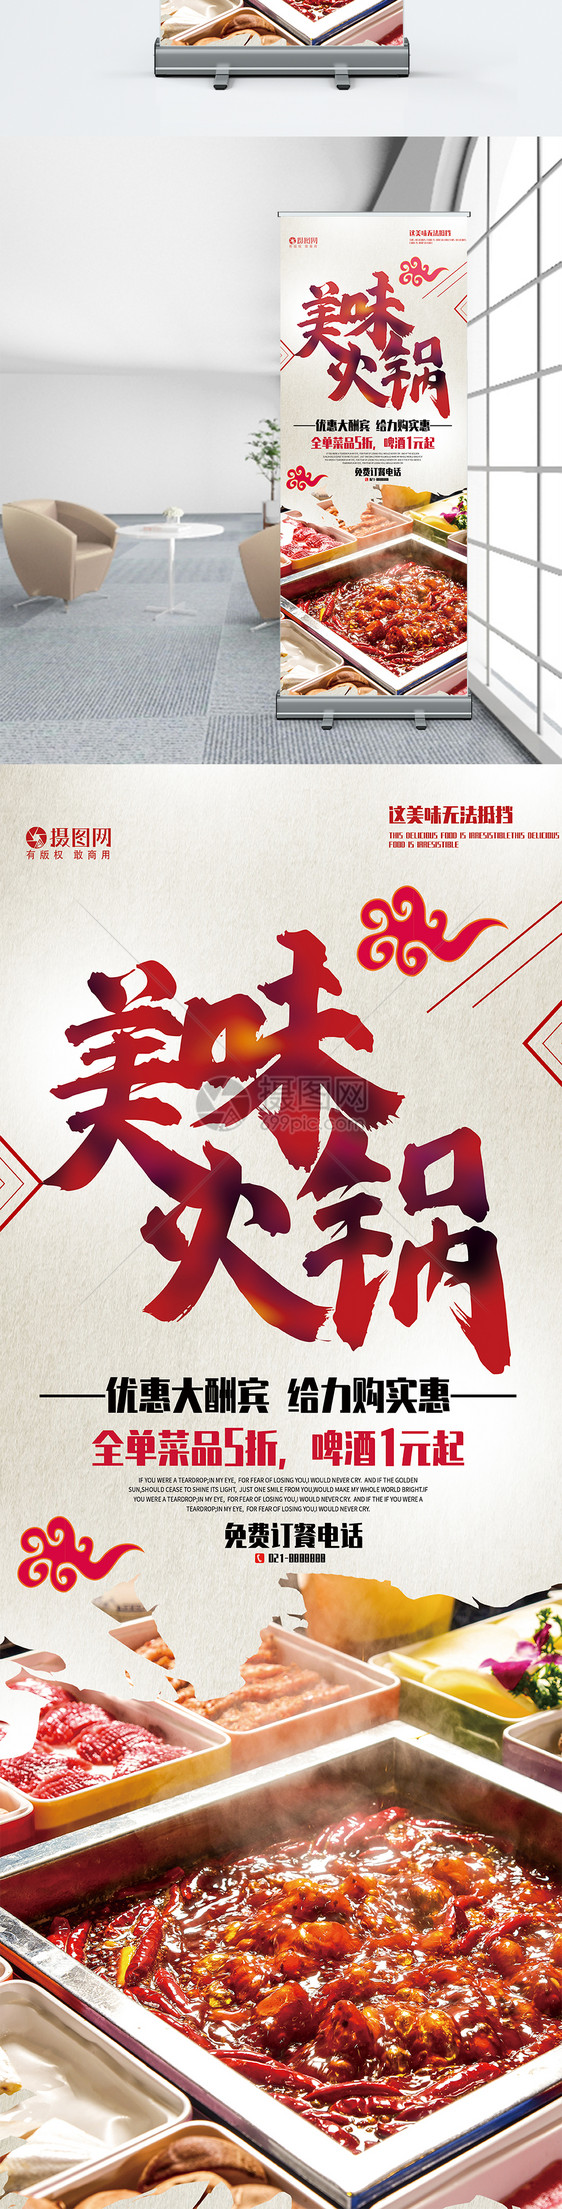 简约中国风复古美味火锅餐饮美食活动促销宣传X展架易拉宝图片